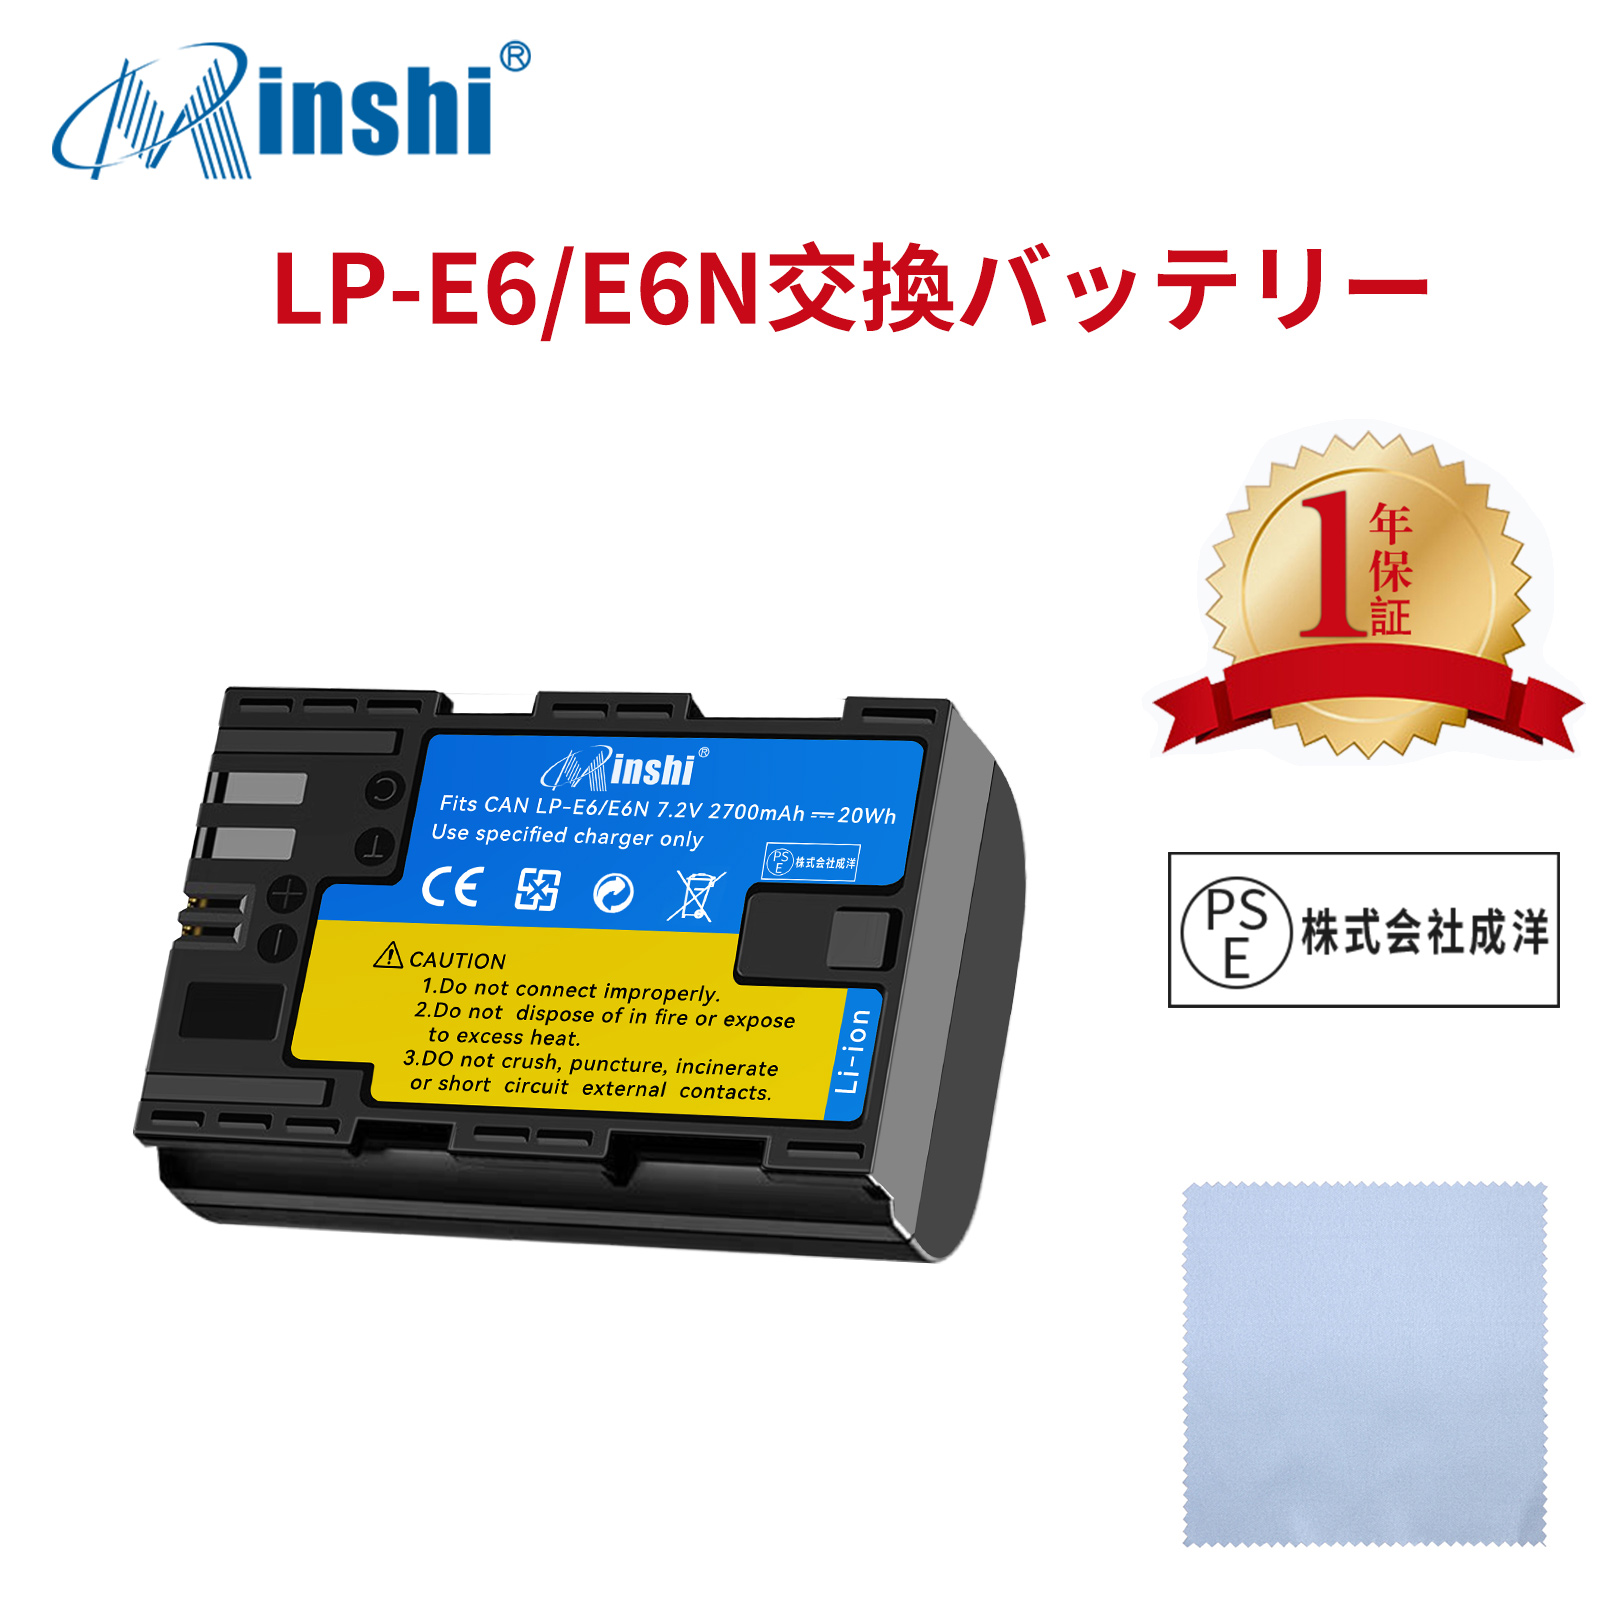 【清潔布ー付】minshi Canon EOS 80D  LP-E6NH LP-E6N EOS6D CANON 80D 【2700mAh 7.2V】高品質LP-E6NH交換用バッテリー